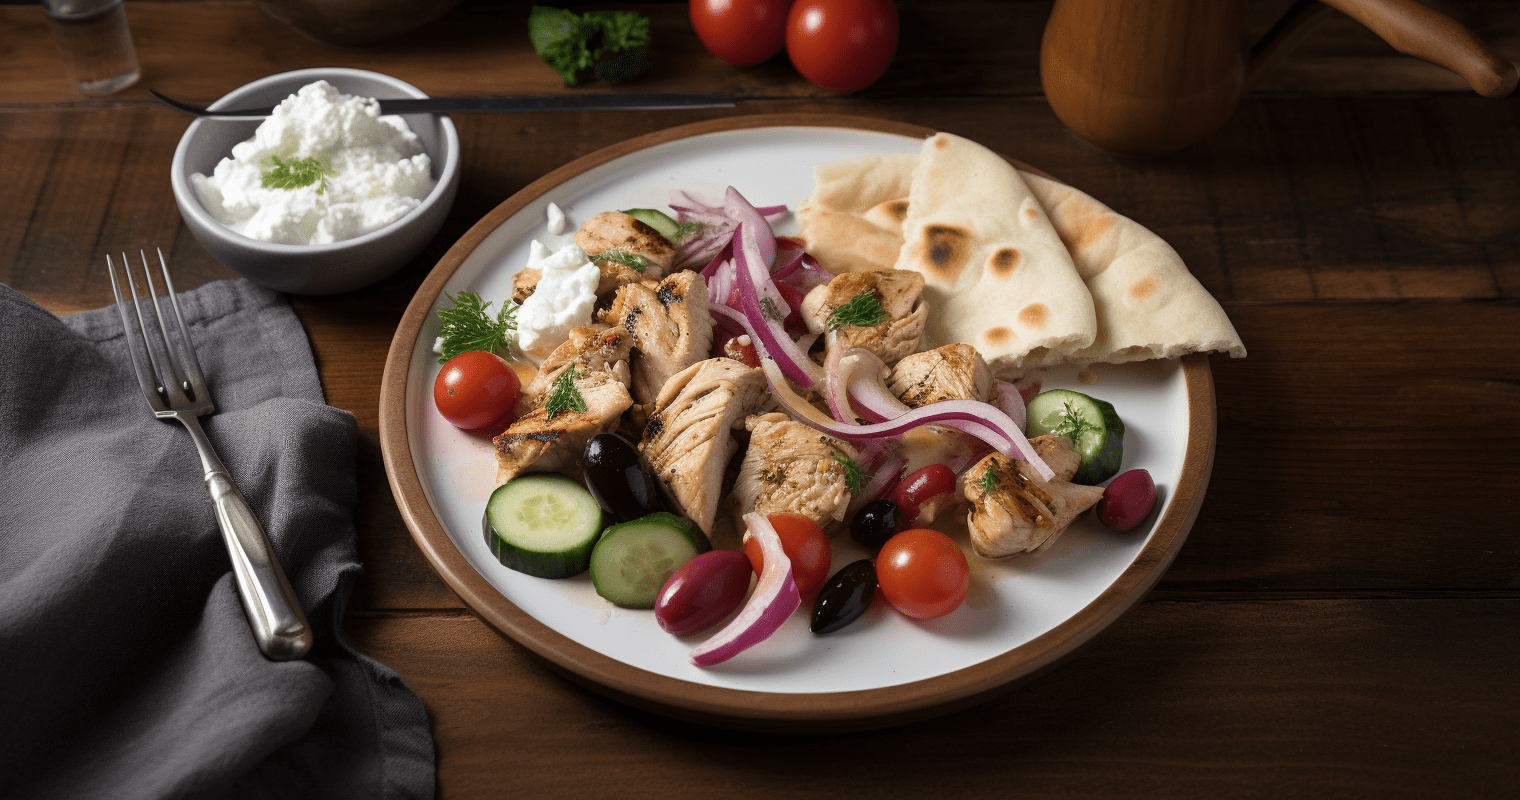 Greek Chicken Souvlaki